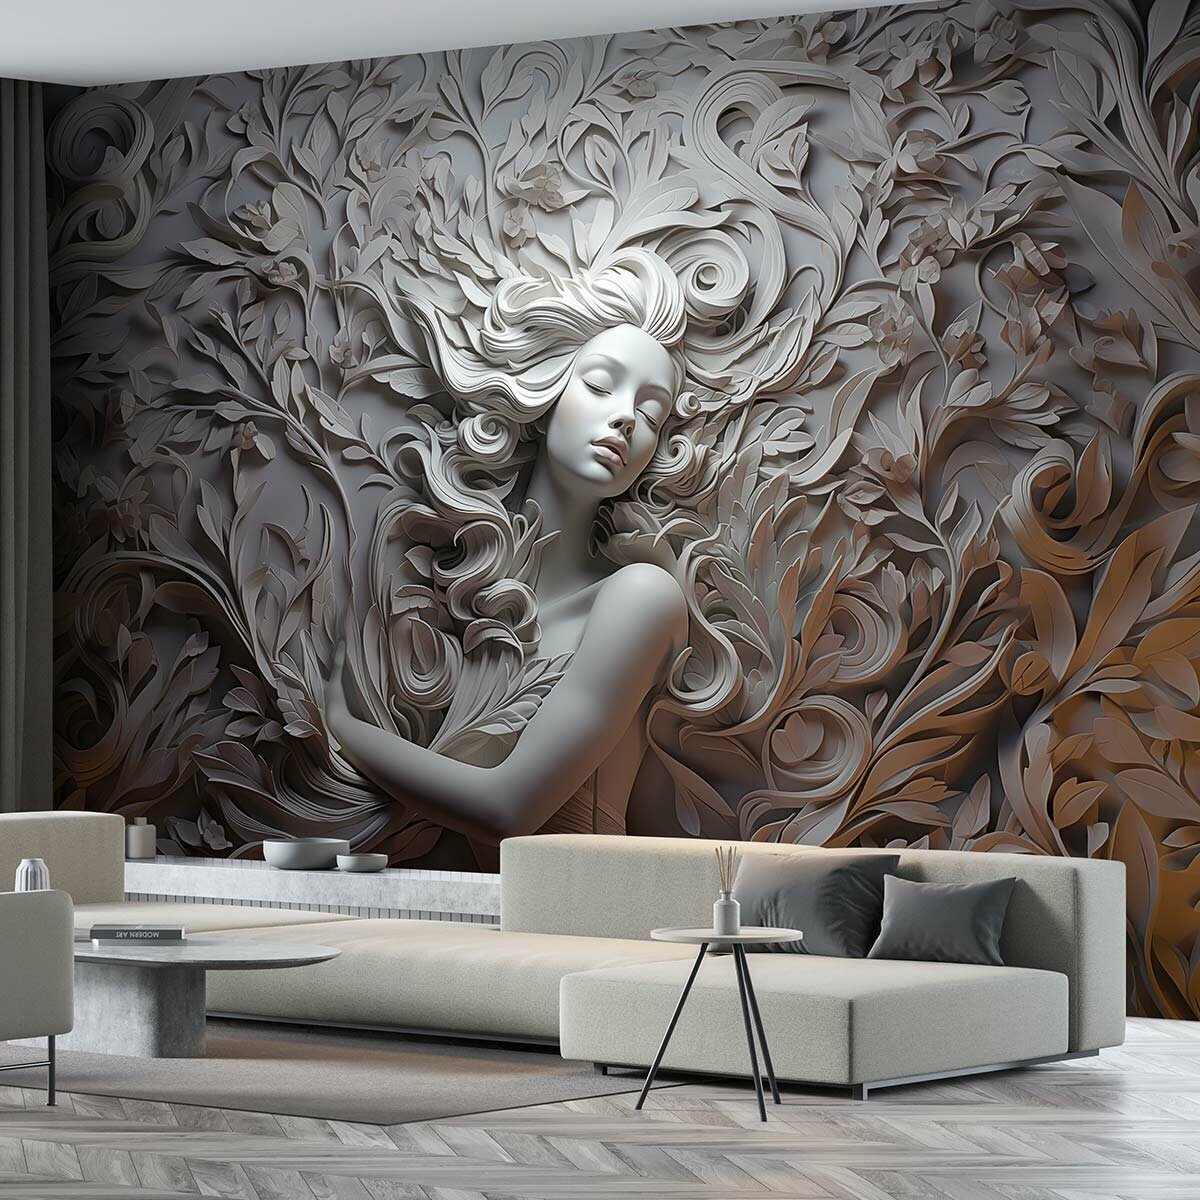 Фотообои флизелиновые с виниловым покрытием VEROL "Барельеф", 500х283 см, моющиеся обои на стену, декор для дома